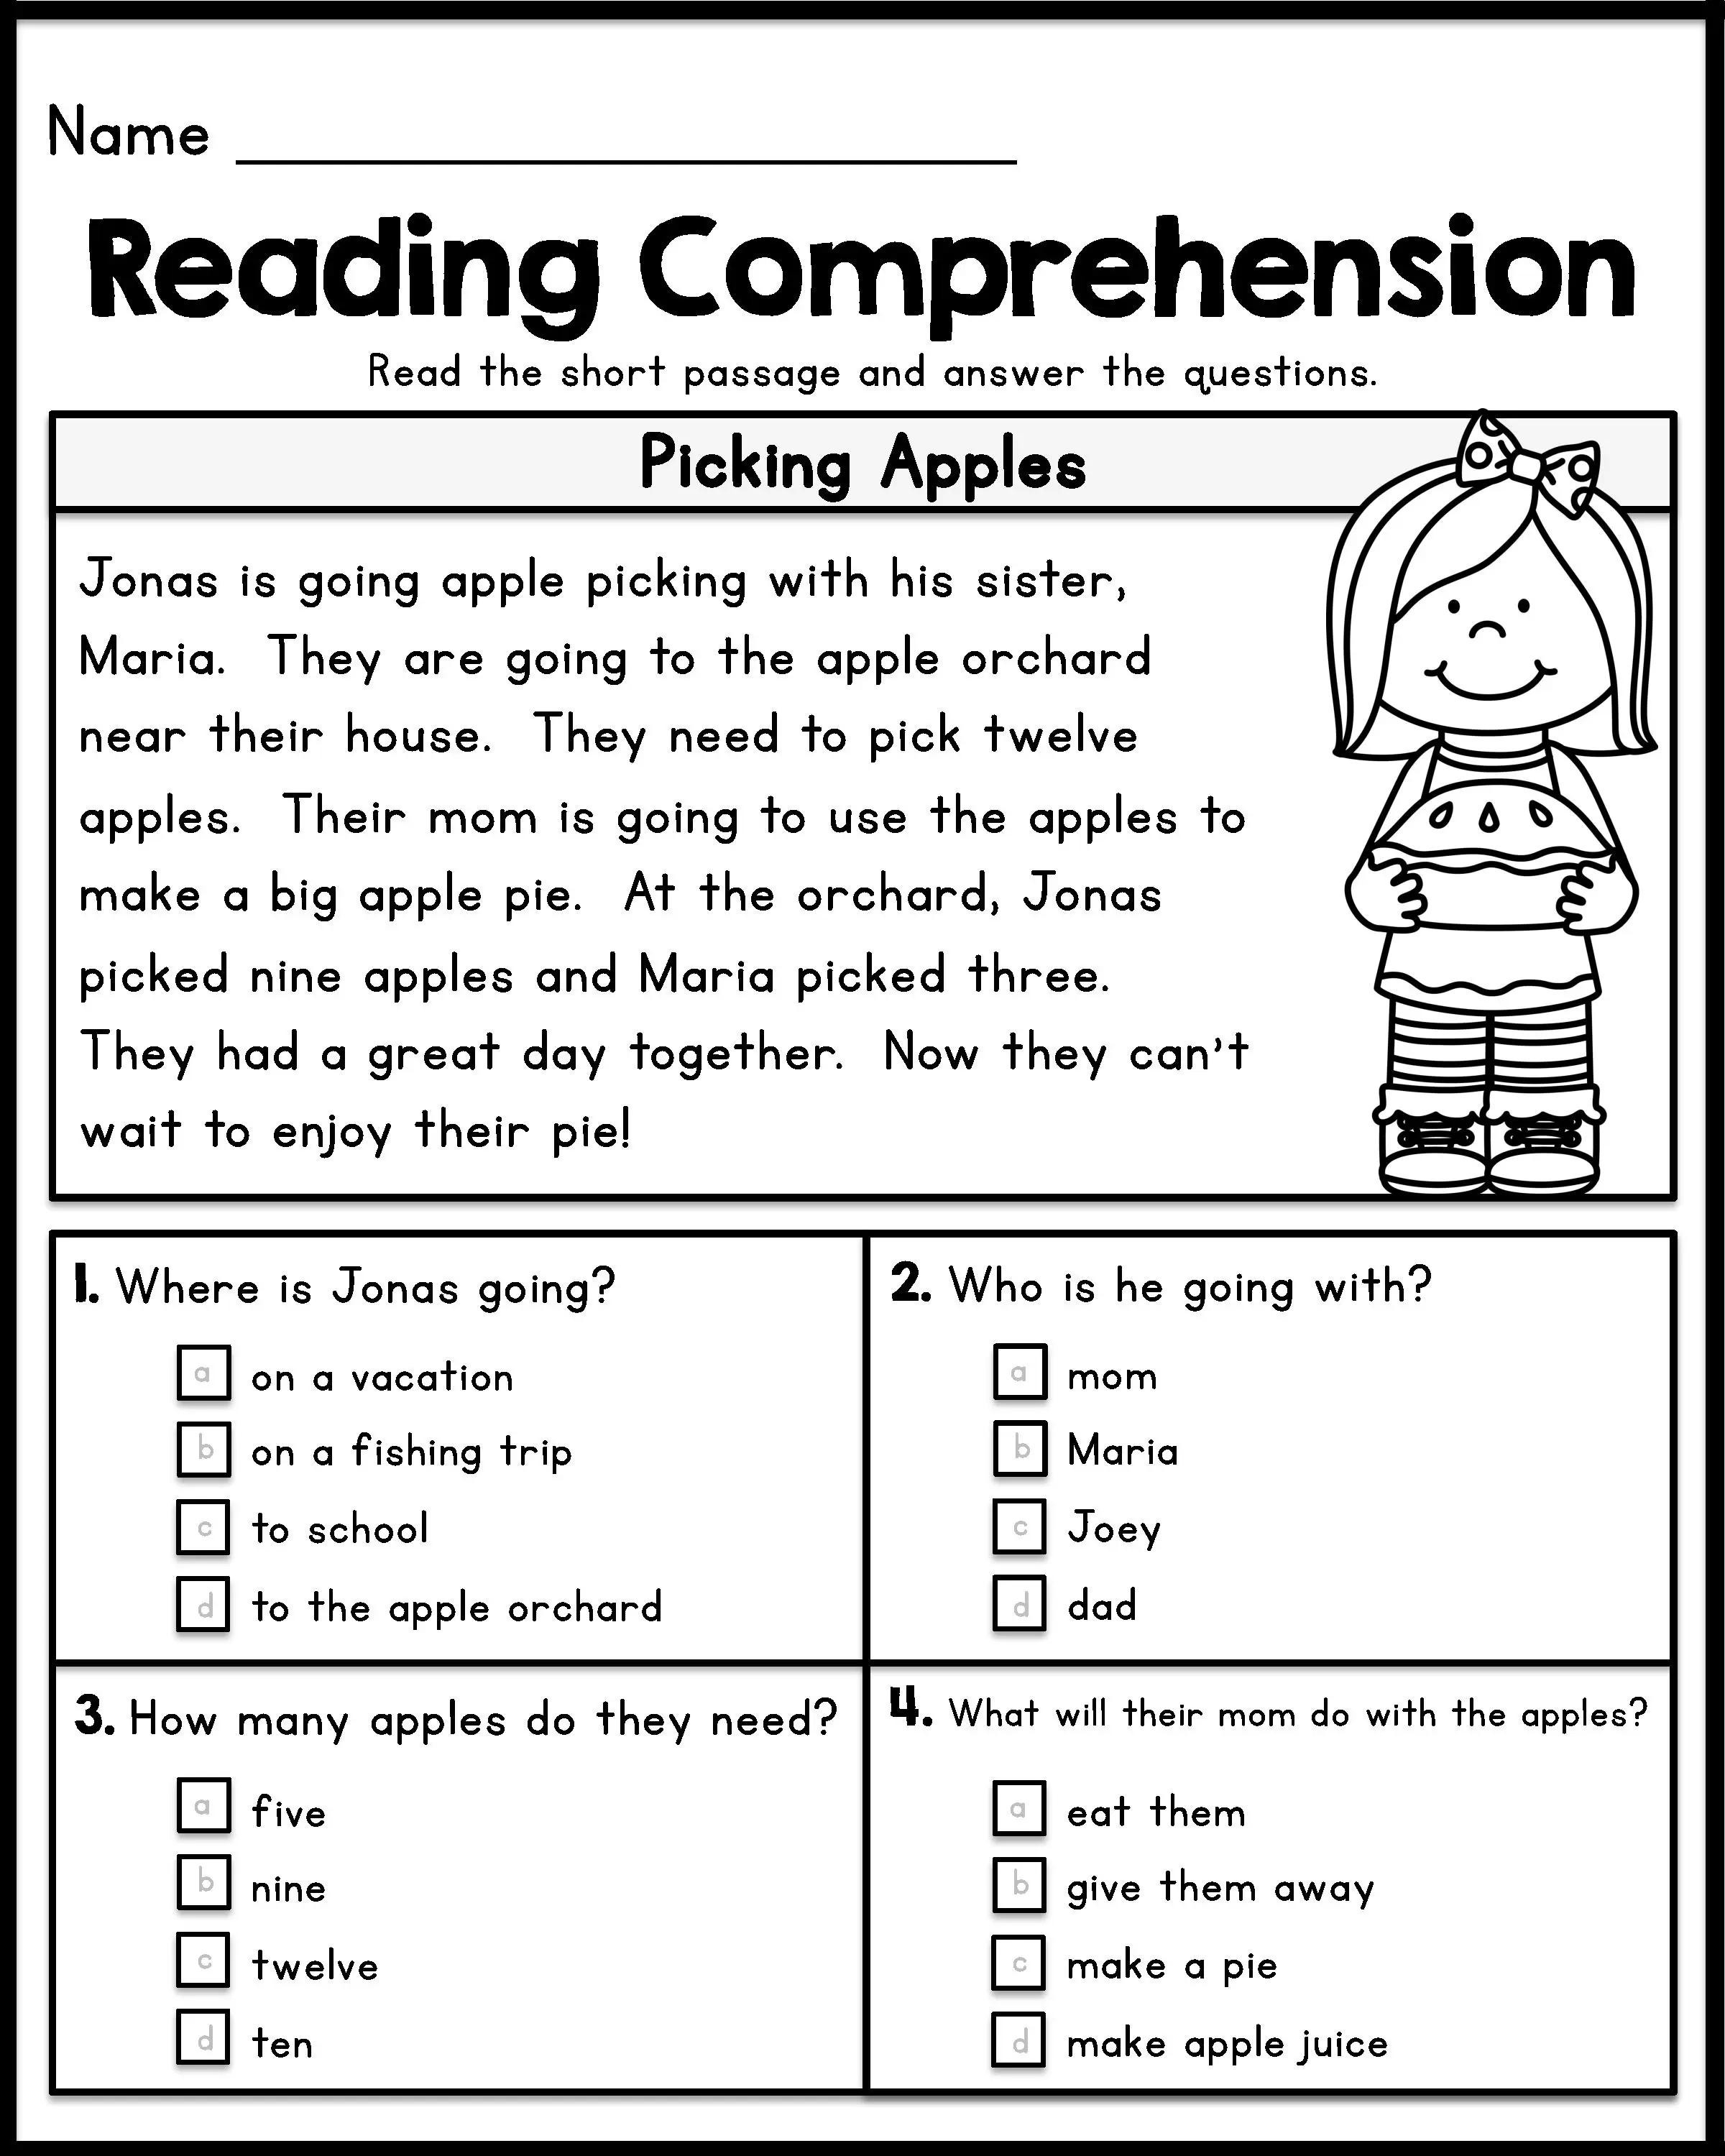 Reading Comprehension Worksheet Grade 1